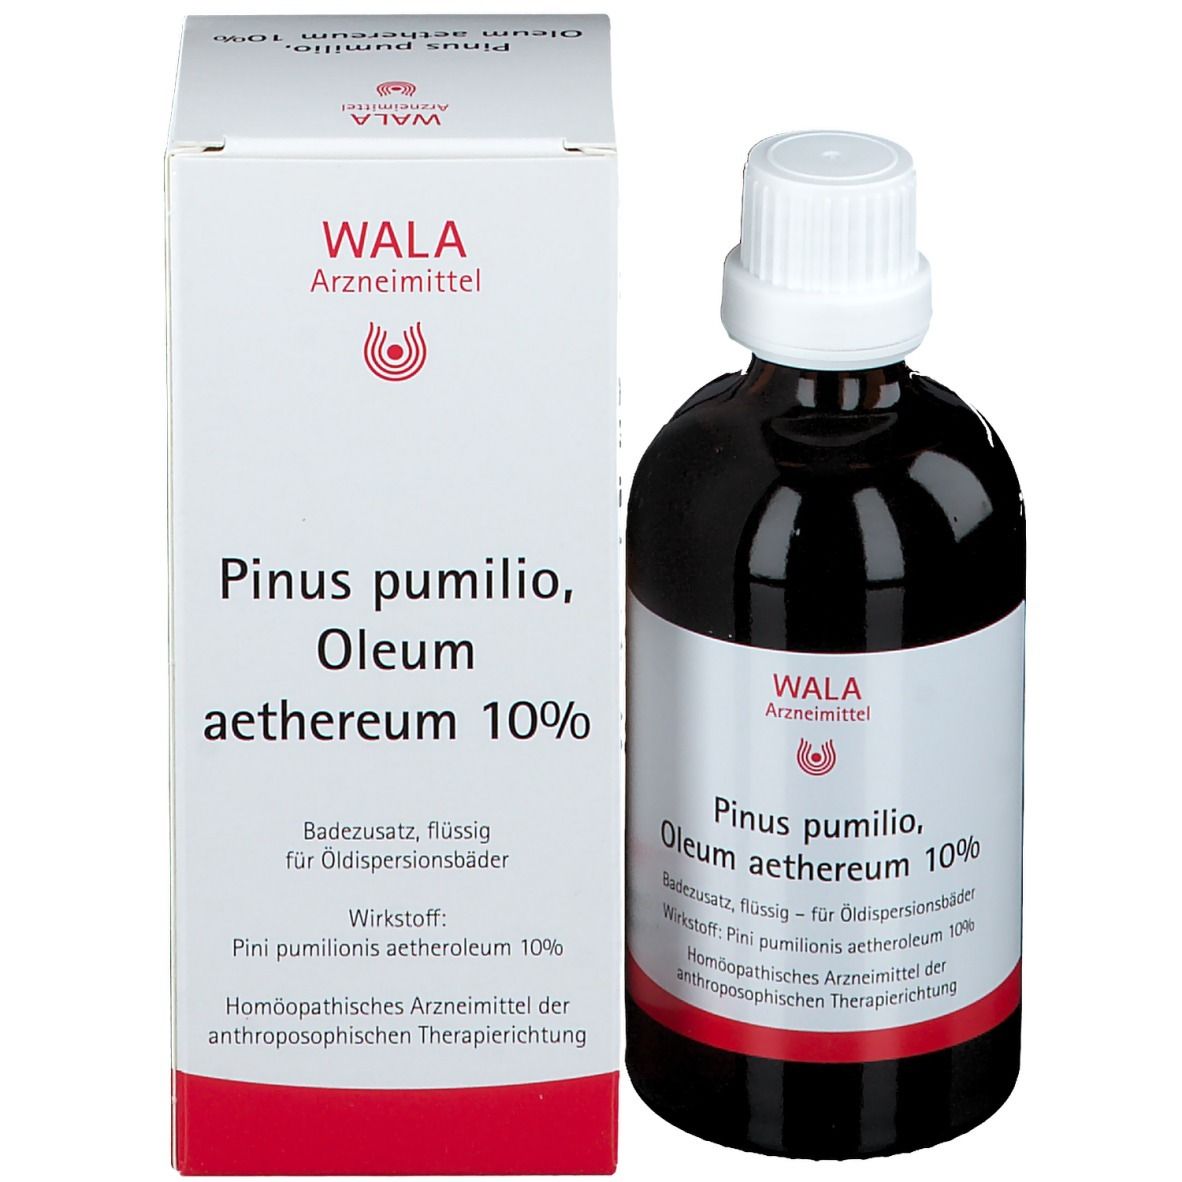 PINUS PUMILIO Oleum aeth. 10%